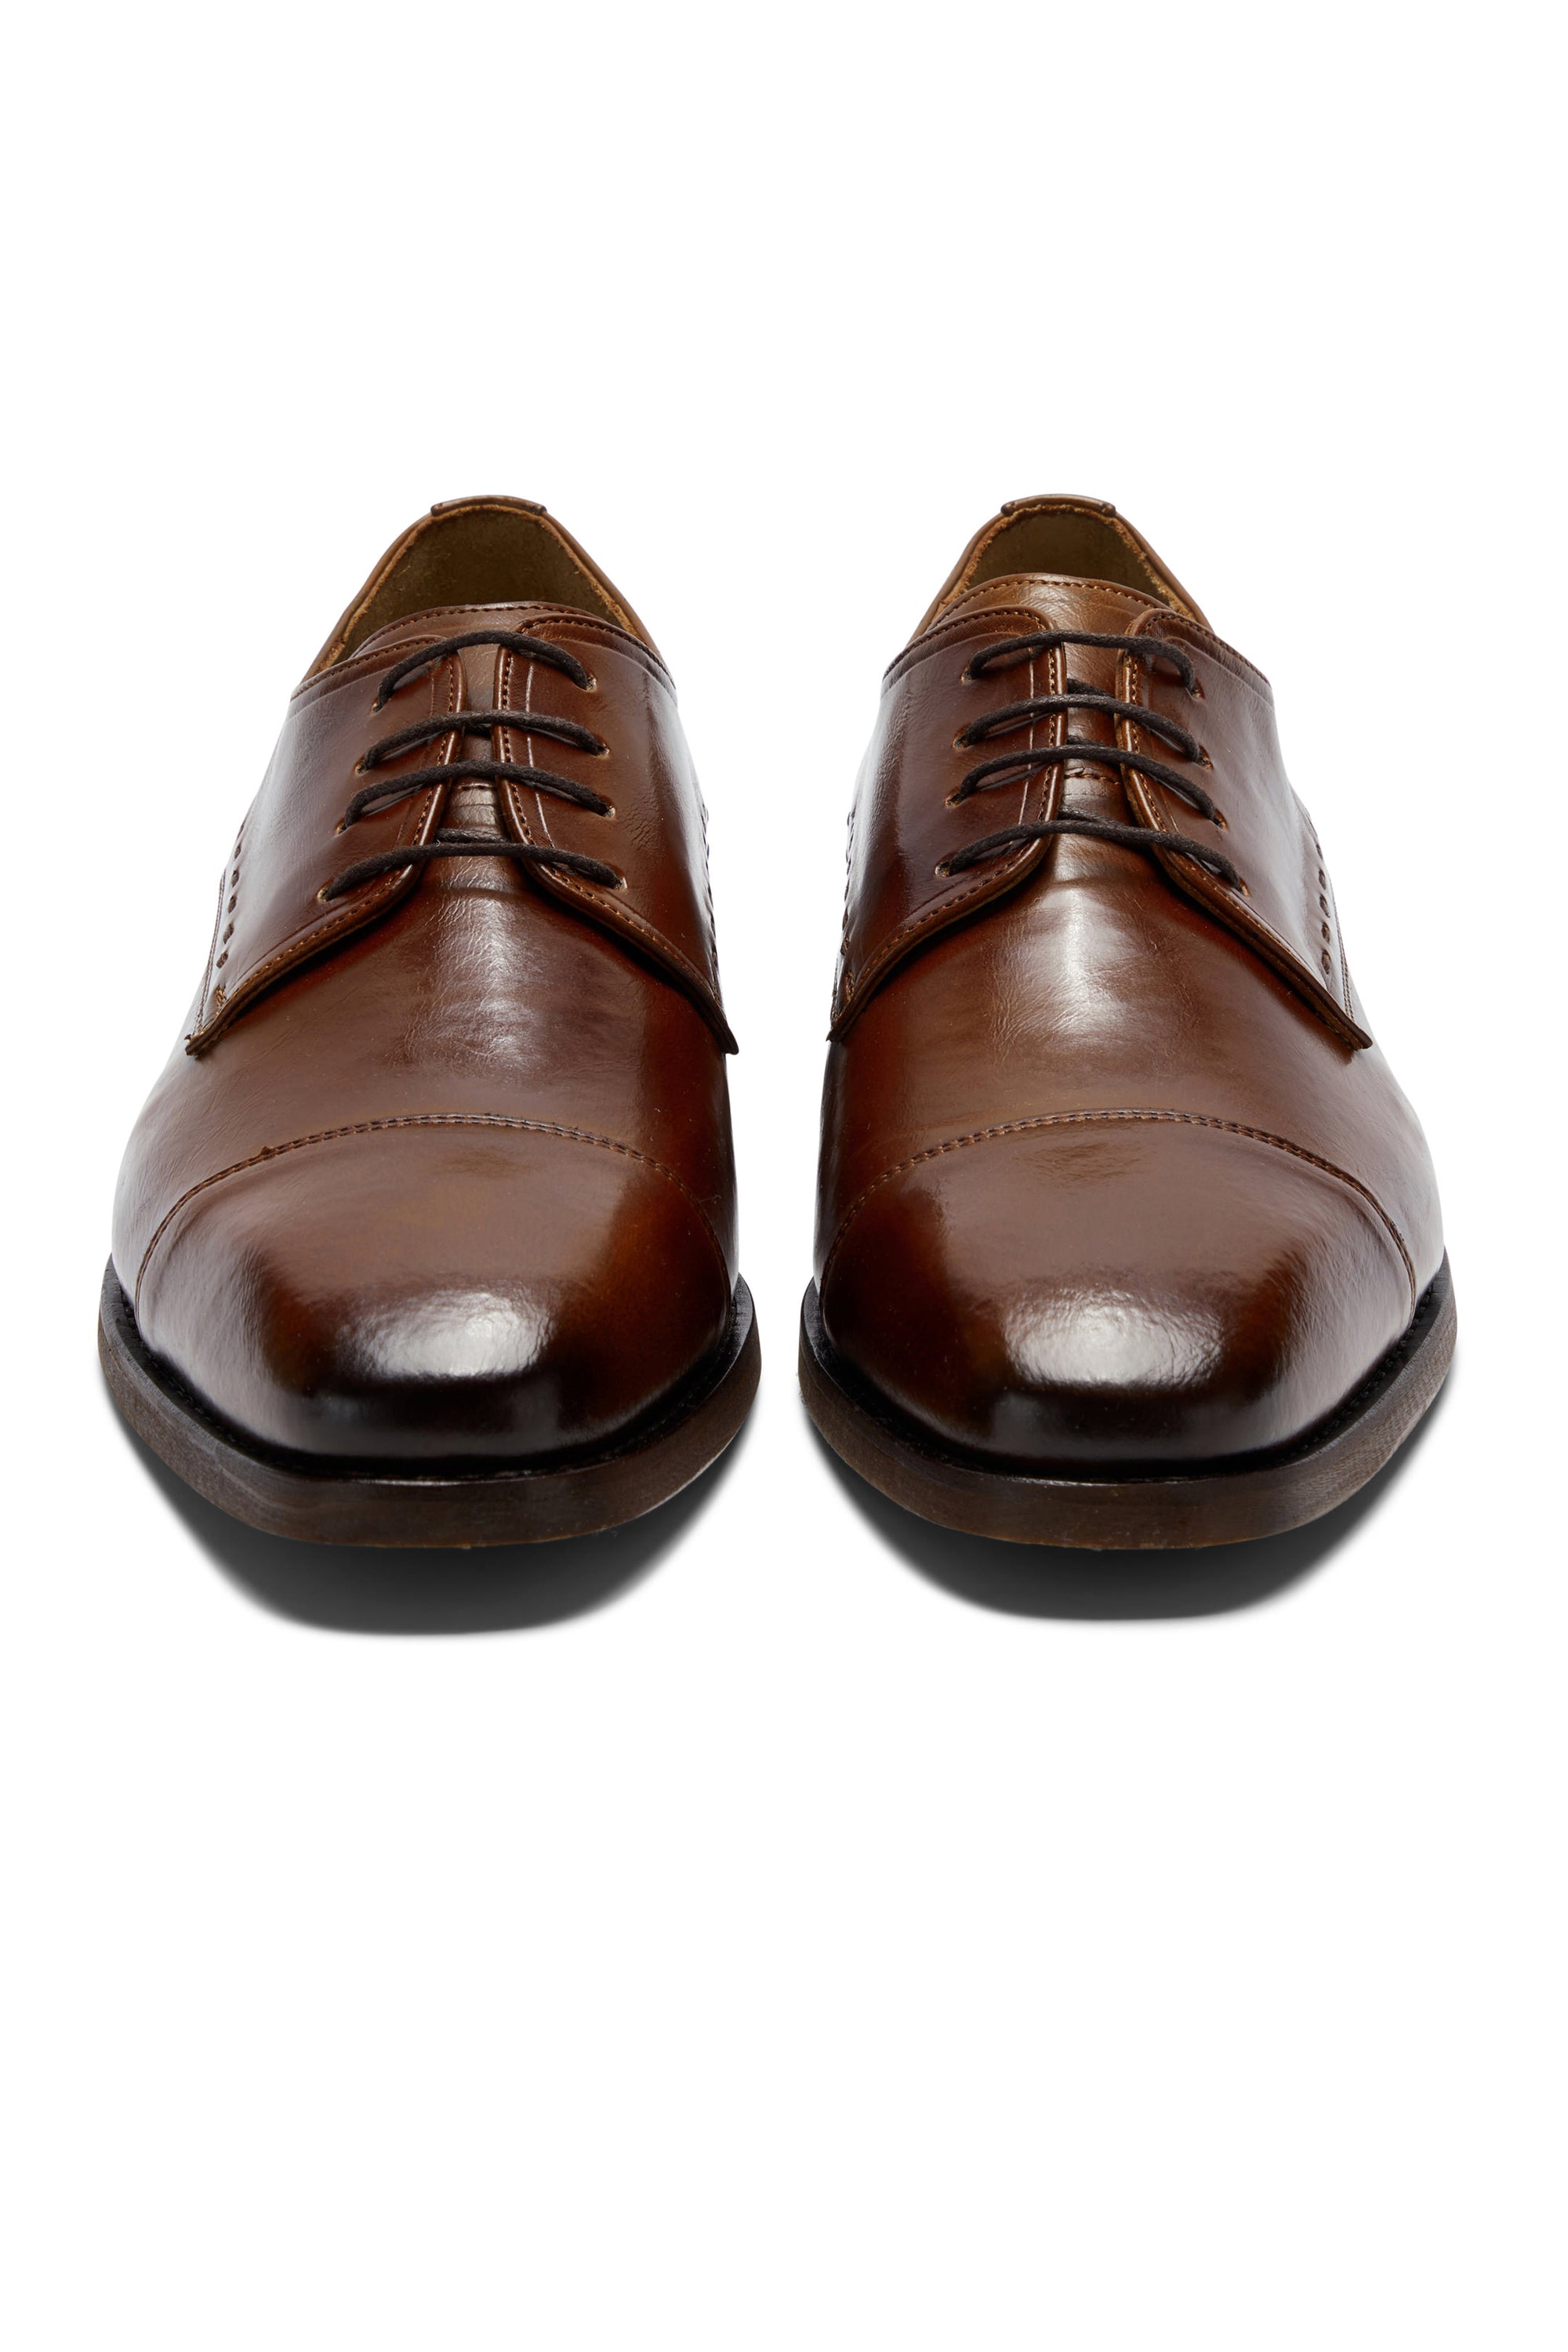 Arthur Cognac Shoe By Benetti Menswear 